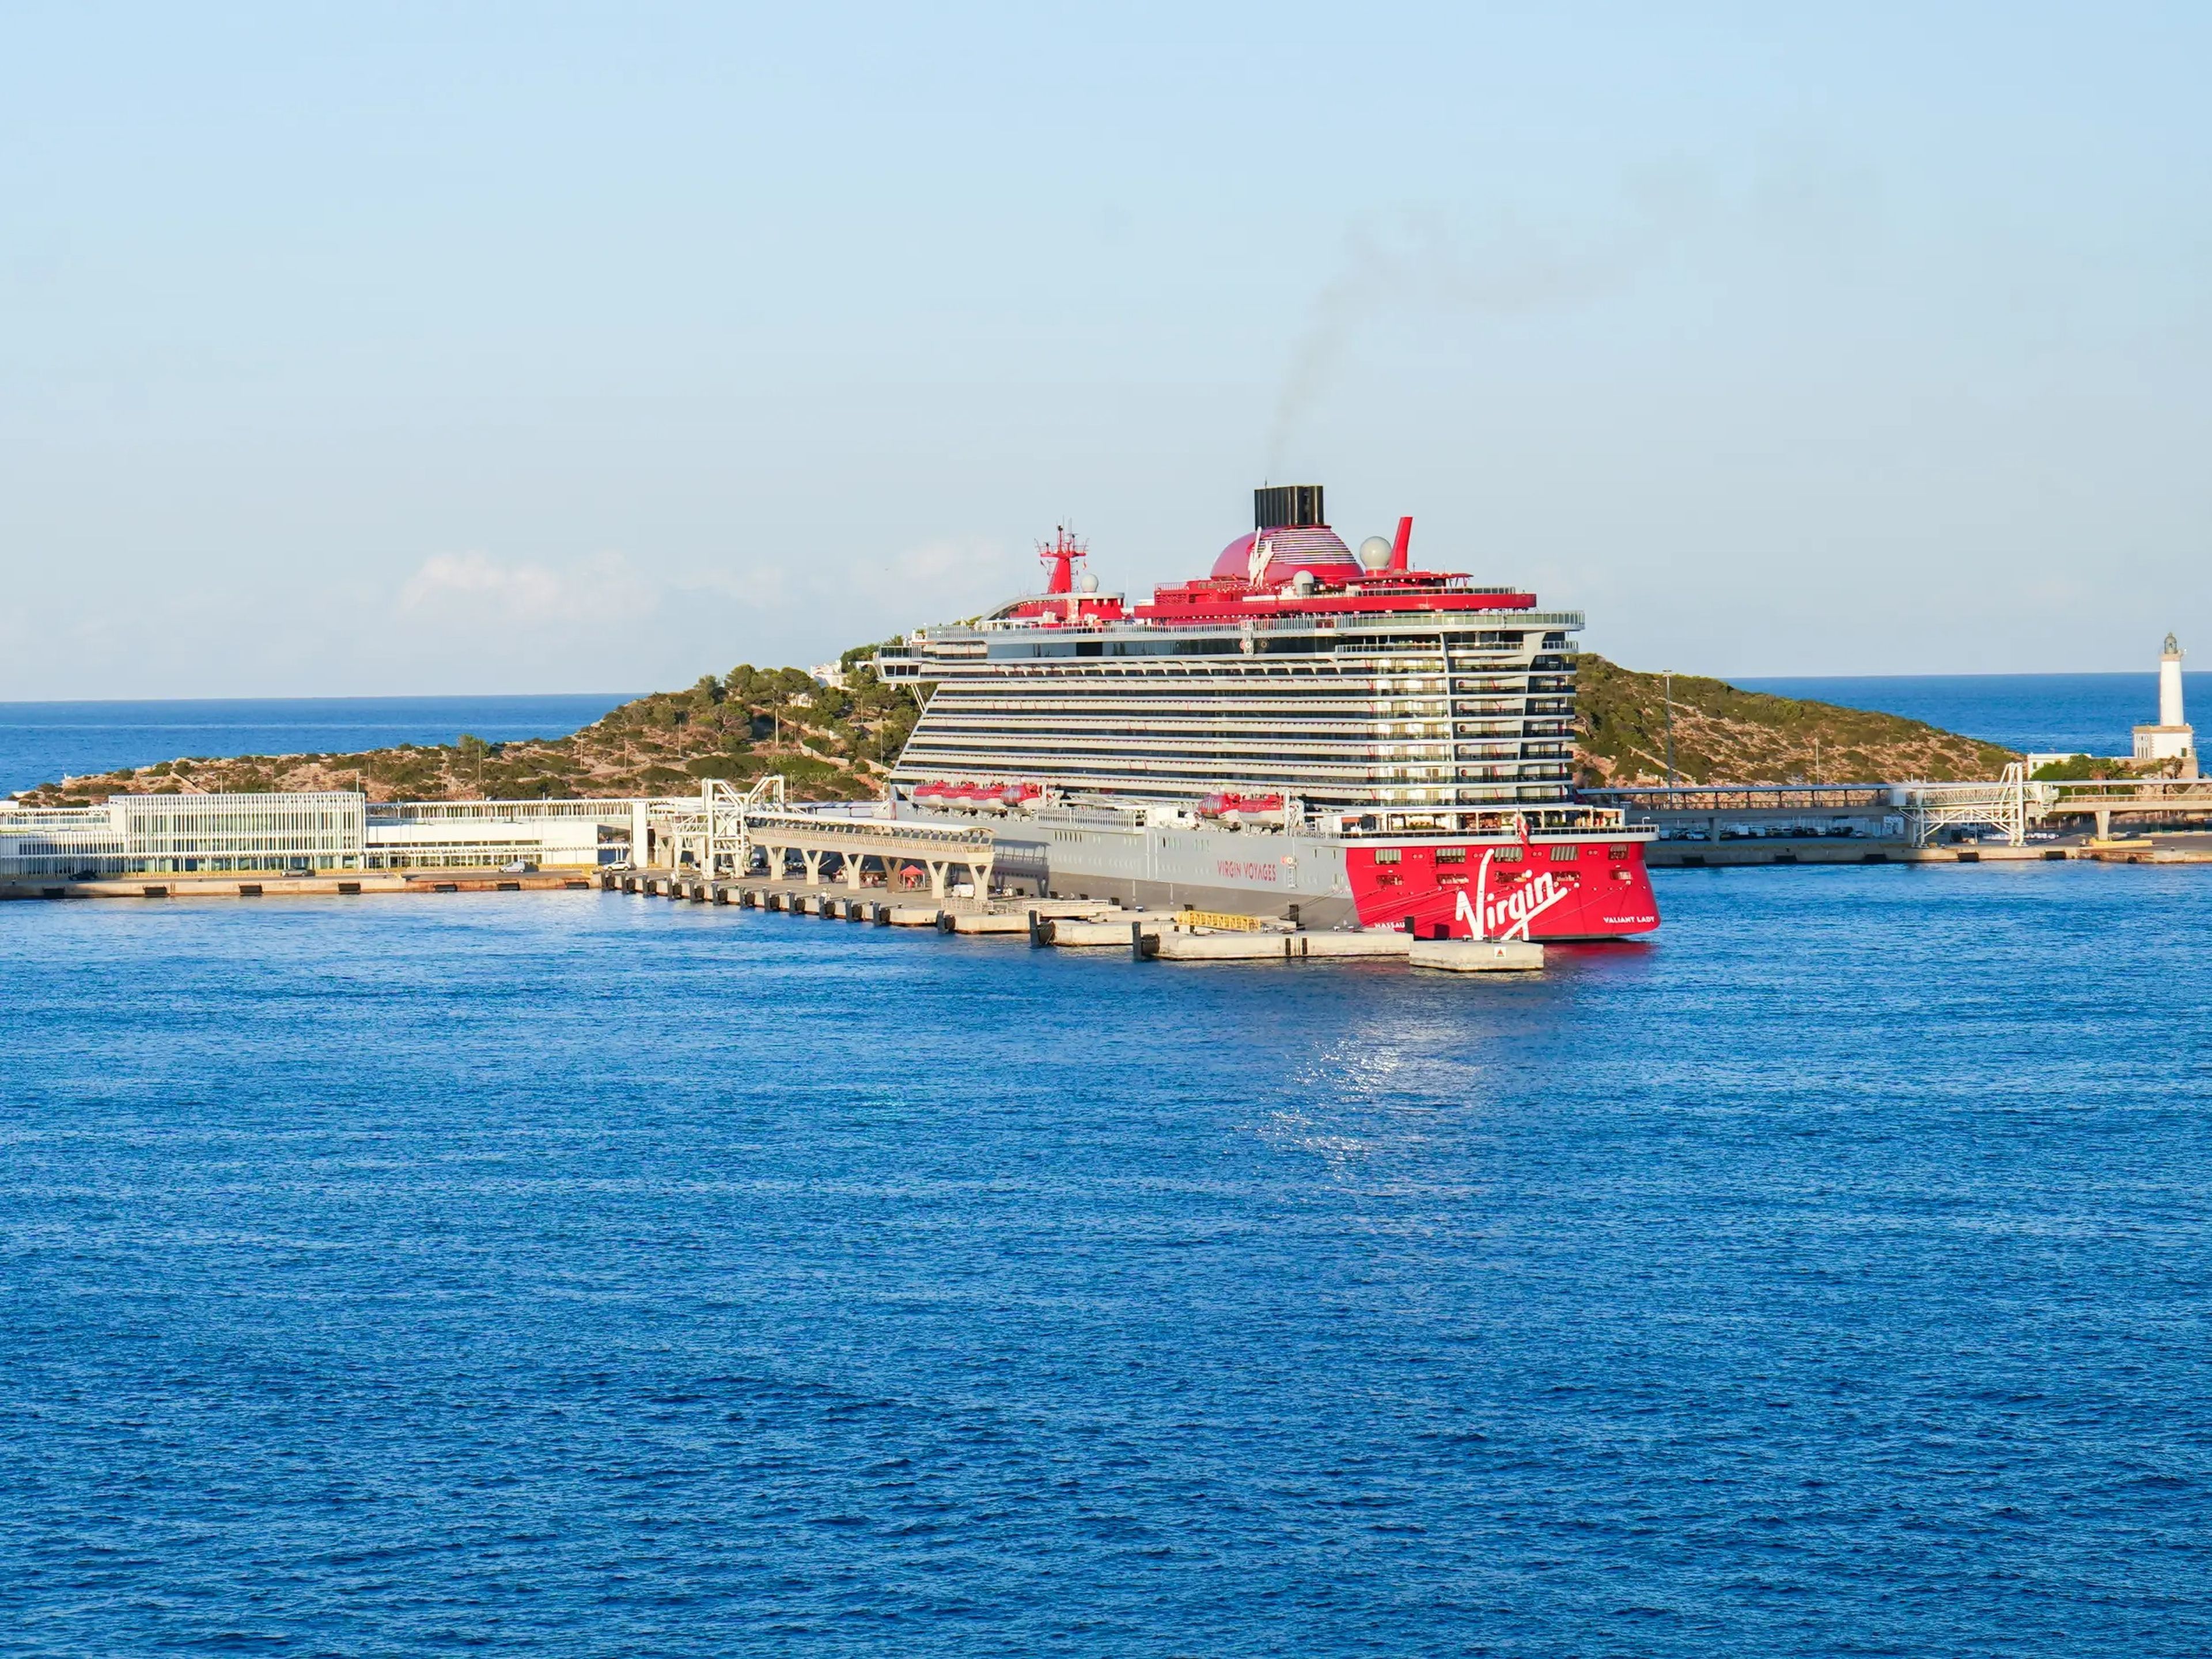 El buque Valiant Lady de Virgin Voyages atracado en Ibiza.